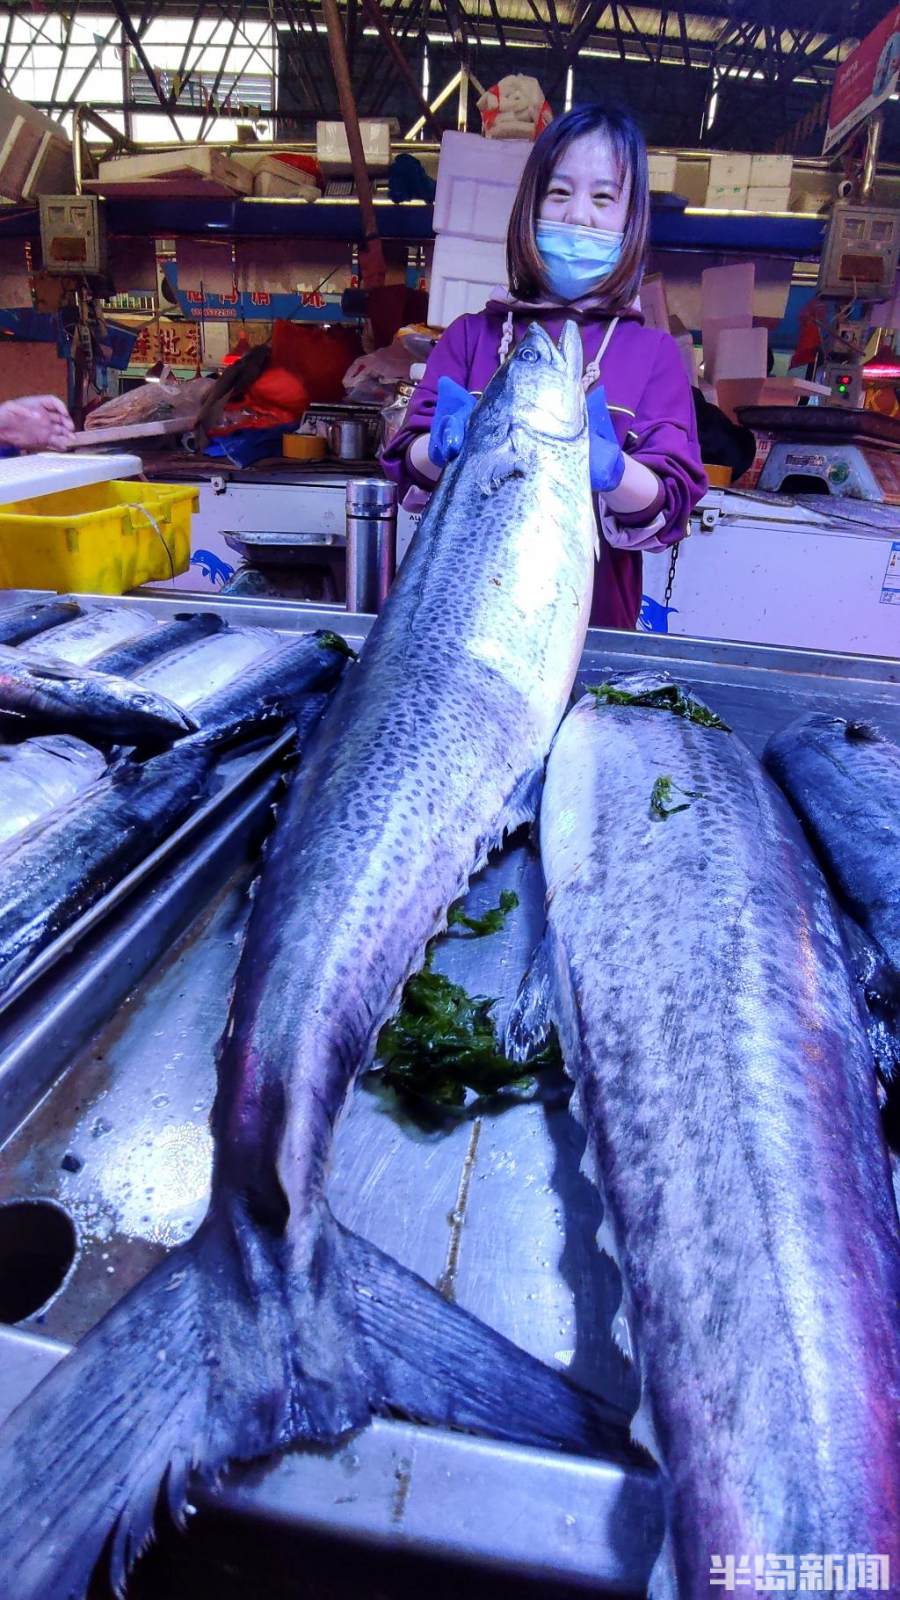 每斤鲅鱼价格在28到30元间鲅鱼的价格又会有小涨幅与亲友分享青岛这